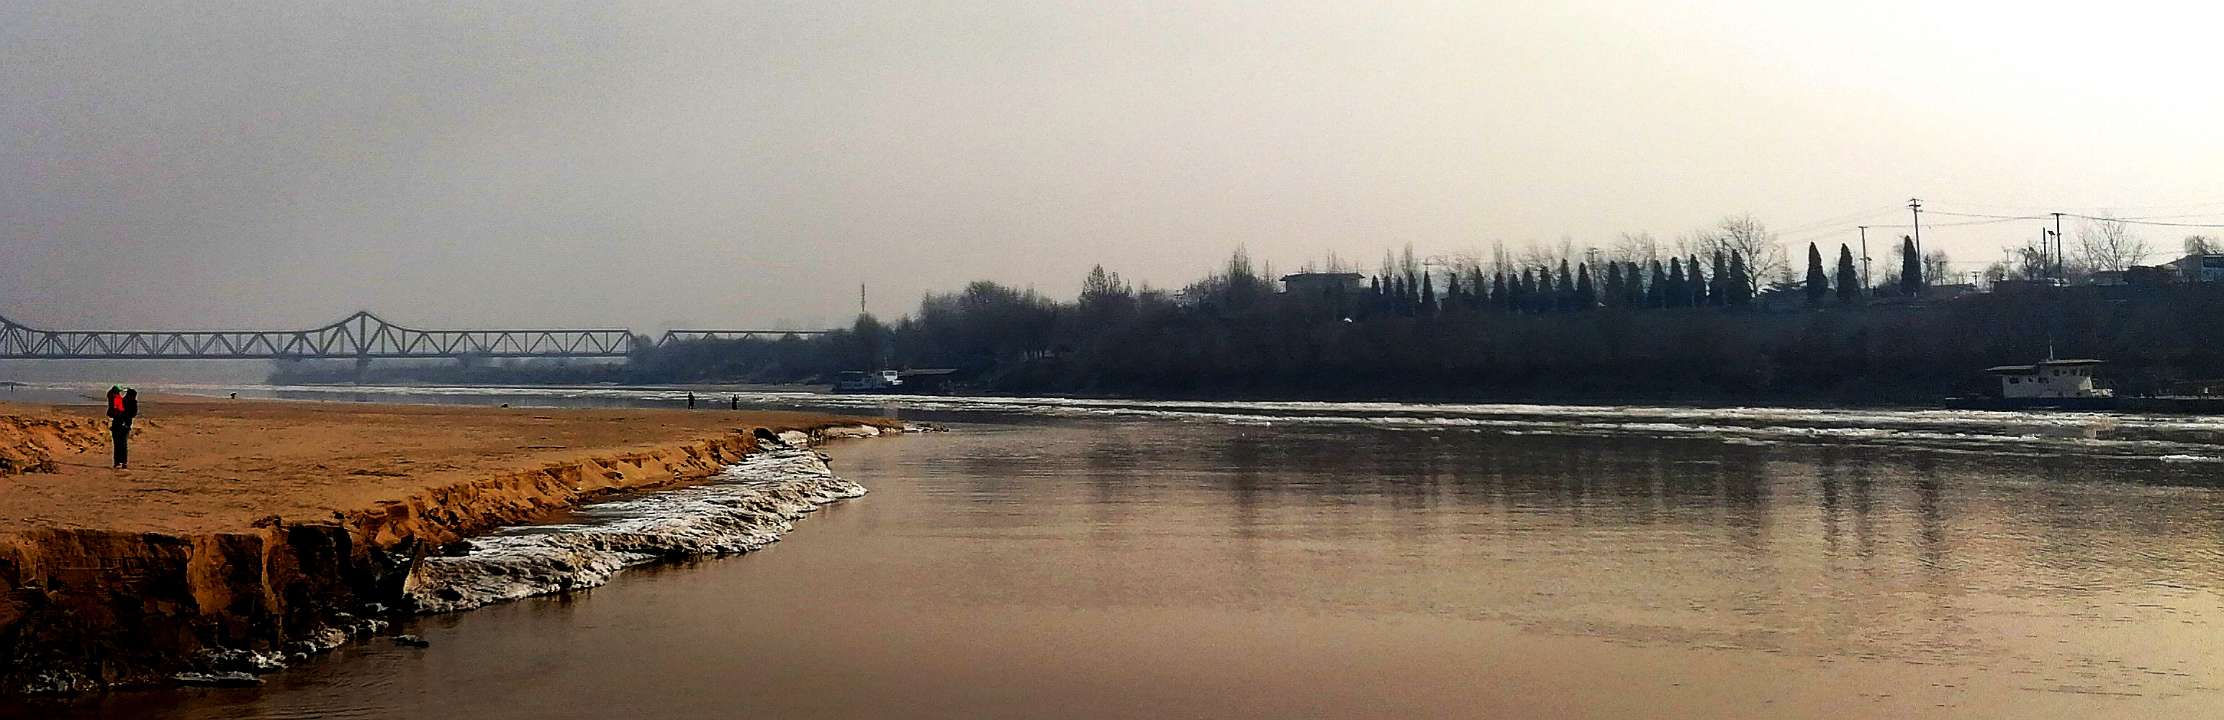 86秒丨黄河济南段境内出现冰凌 境内已拆除2座浮桥